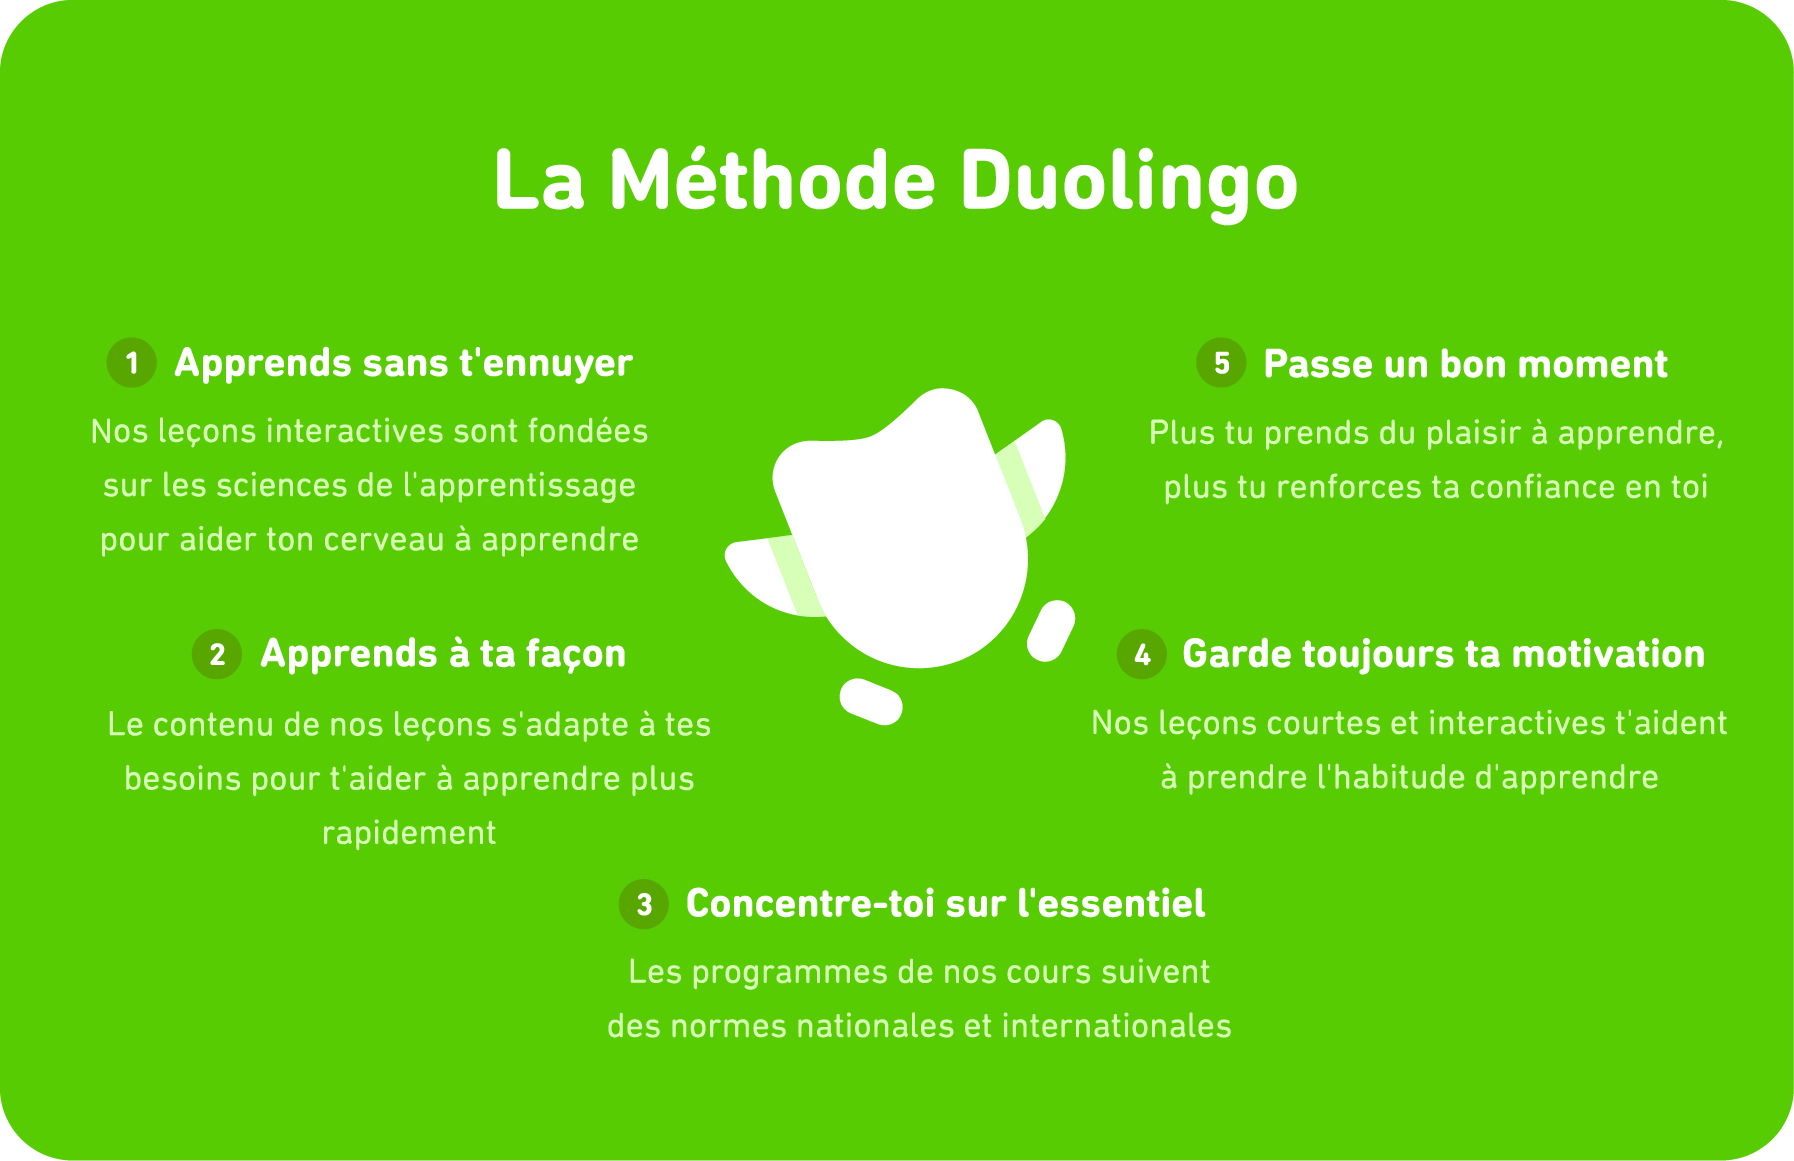 une énumération visuelle des cinq éléments de la méthode Duolingo. Duo apparaît au centre de l’écran. Les cinq éléments sont les suivants : 1. Apprendre sans t’ennuyer. Nos leçons interactives sont fondées sur les sciences de l'apprentissage pour aider ton cerveau à apprendre. 2. Apprends à ta façon. Le contenu de nos leçons s'adapte à tes besoins pour t’aider à apprendre plus rapidement. 3. Concentre-toi sur l’essentiel. Les programmes de nos cours suivent des normes nationales et internationales. 4. Garde toujours ta motivation. Nos leçons courtes et interactives t’aident à prendre l’habitude d’apprendre. 5. Passe un bon moment. Plus tu prends du plaisir à apprendre, plus tu renforces ta confiance en toi.